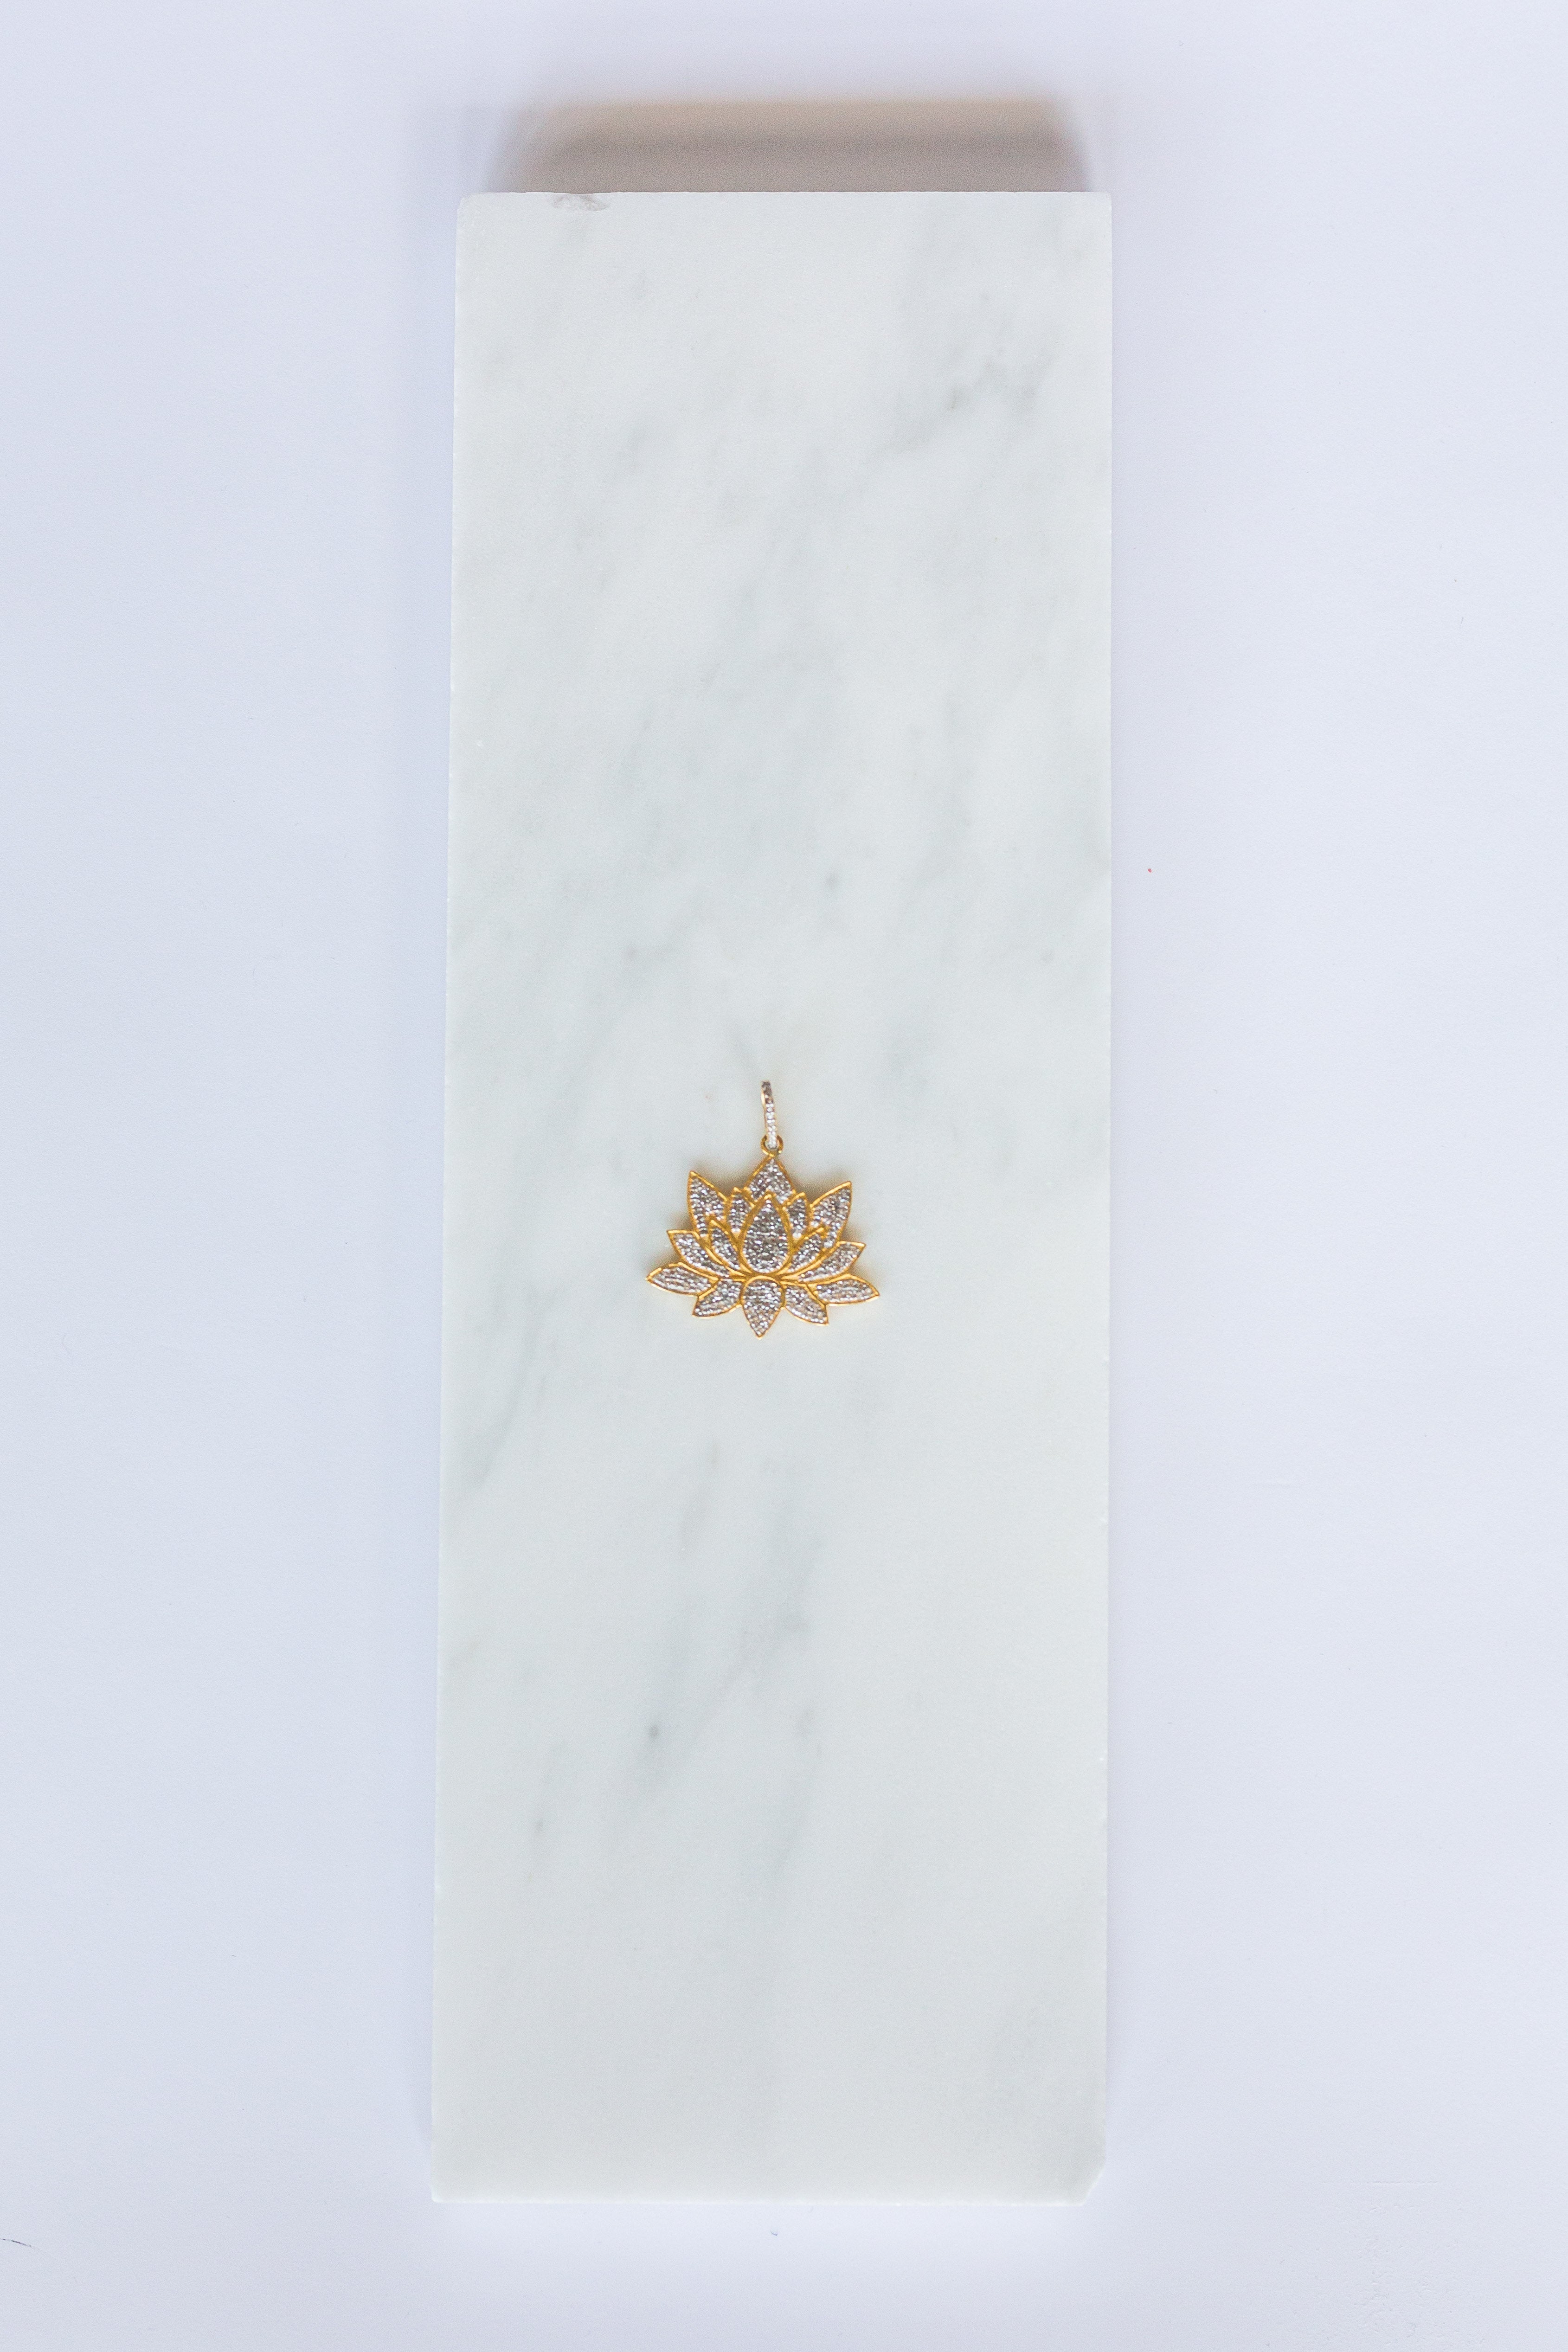 Pave Diamond Lotus Flower Pendant (y9813)